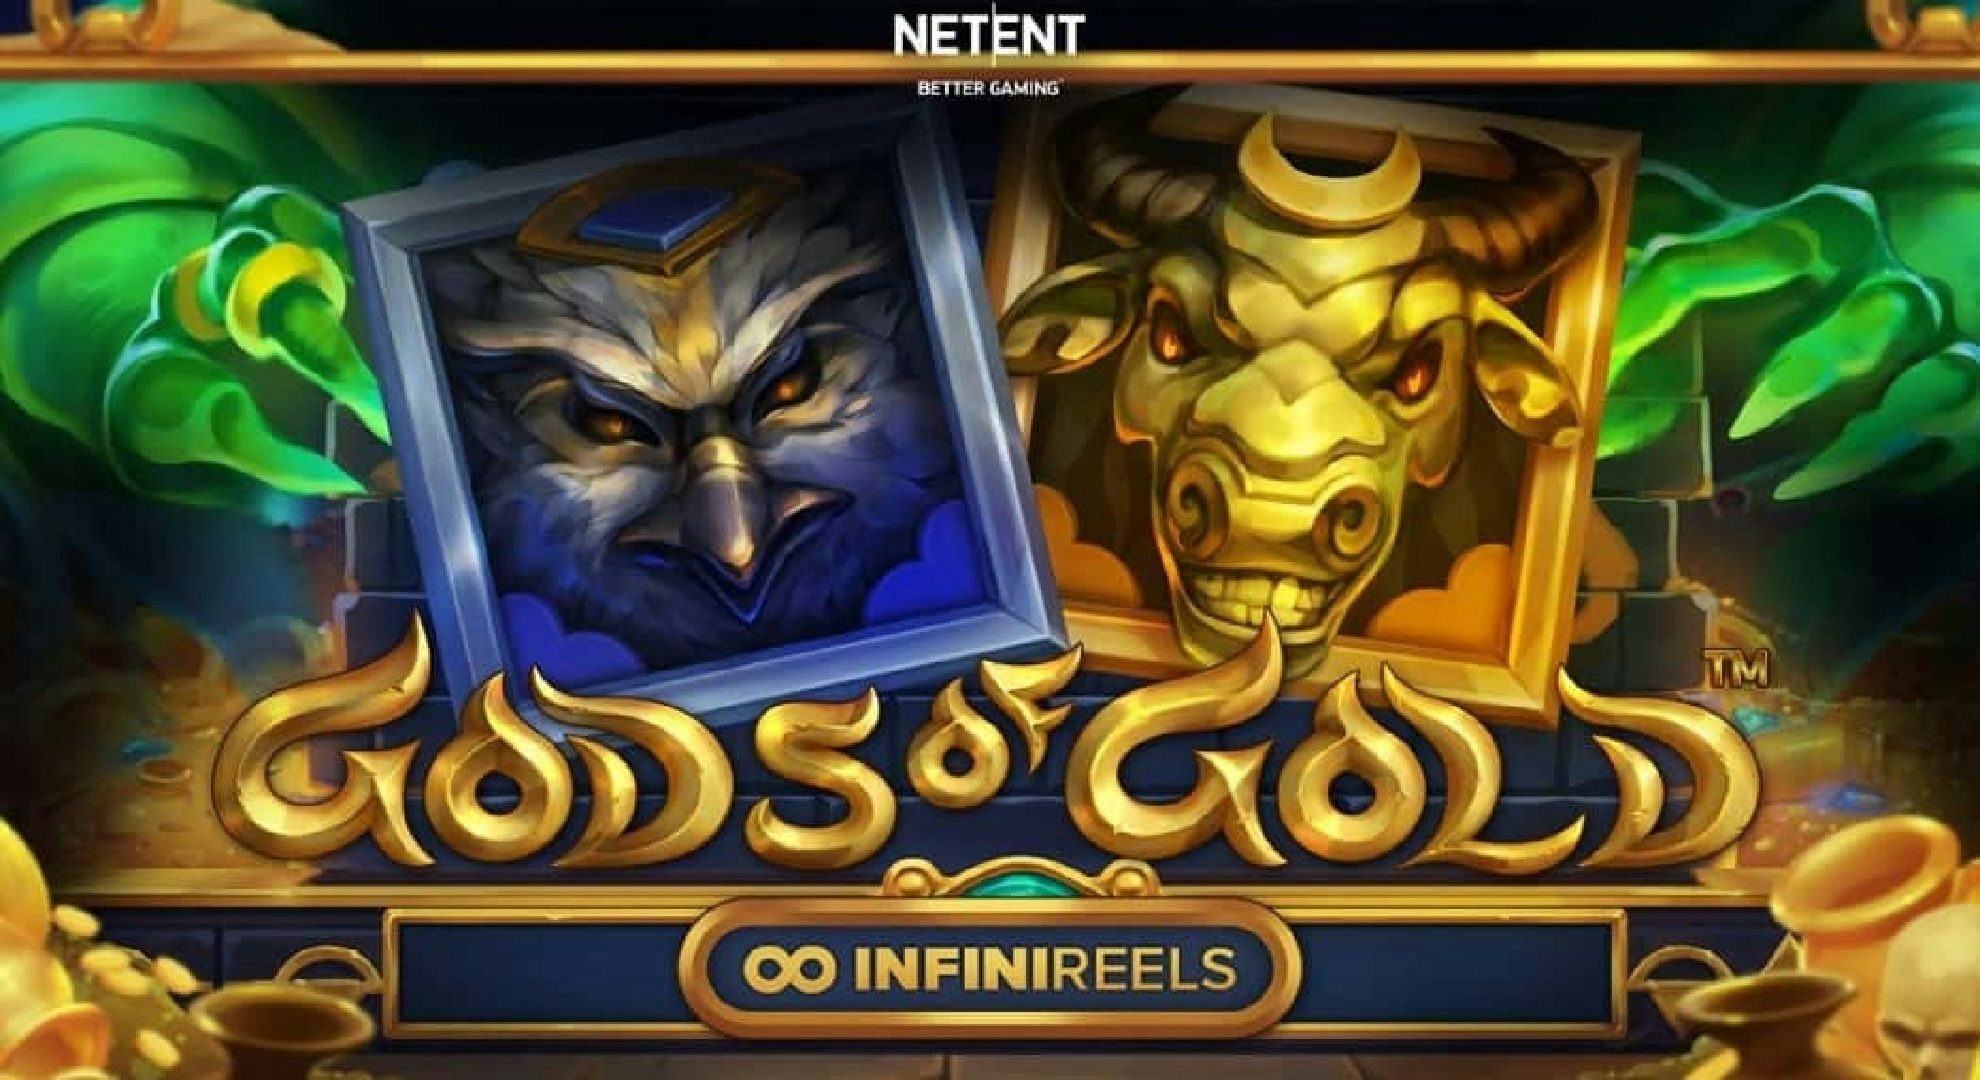 Gods of Gold: Infinireels